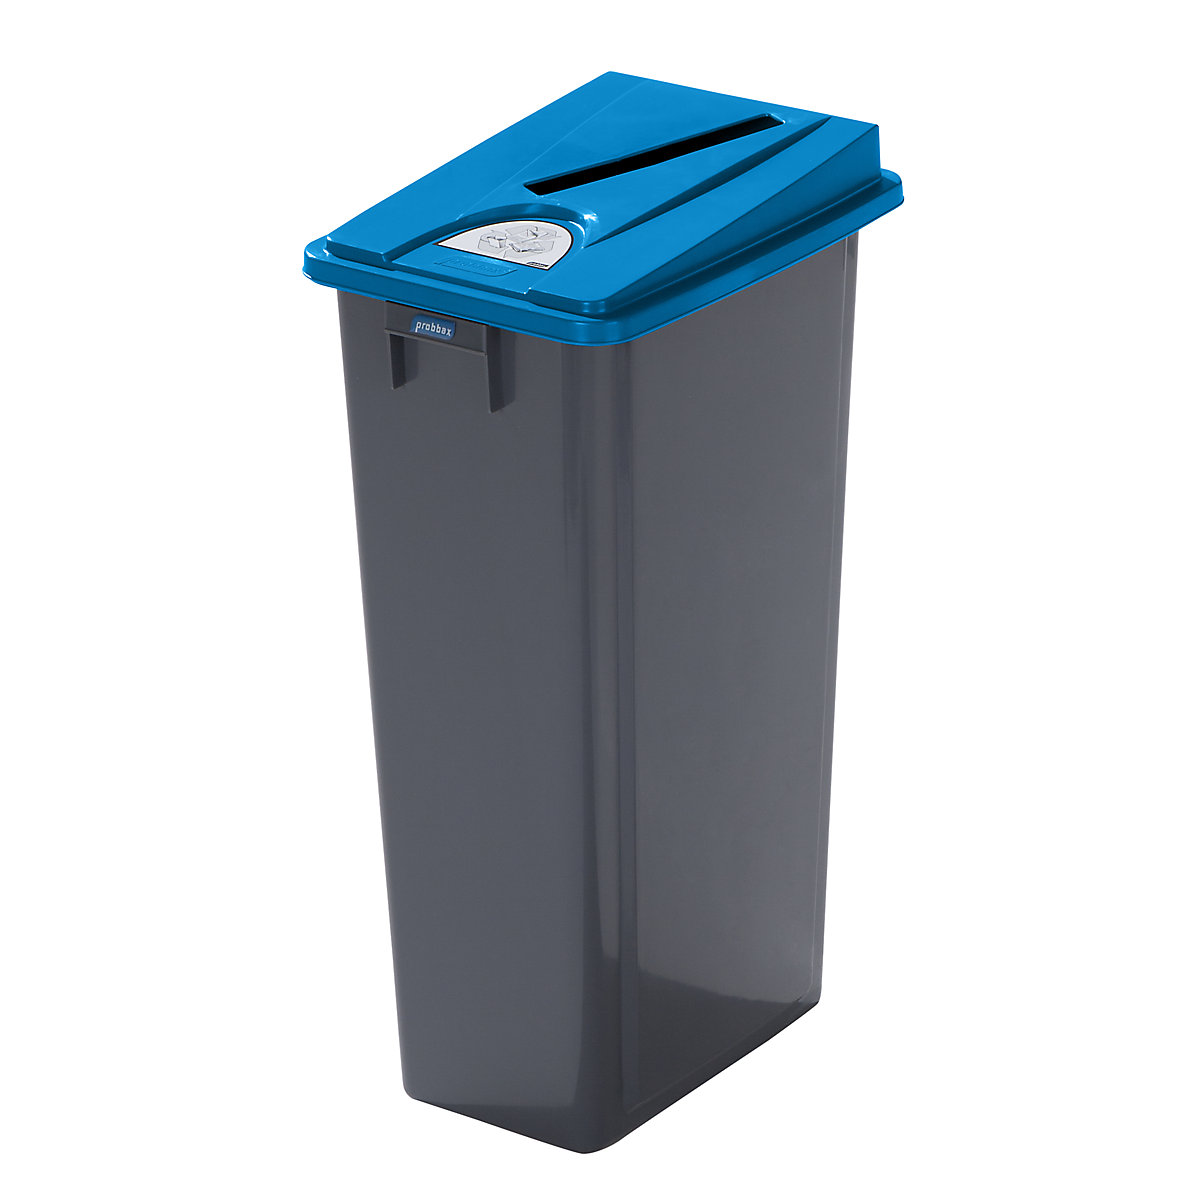 Coletor de materiais recicláveis robusto com tampa